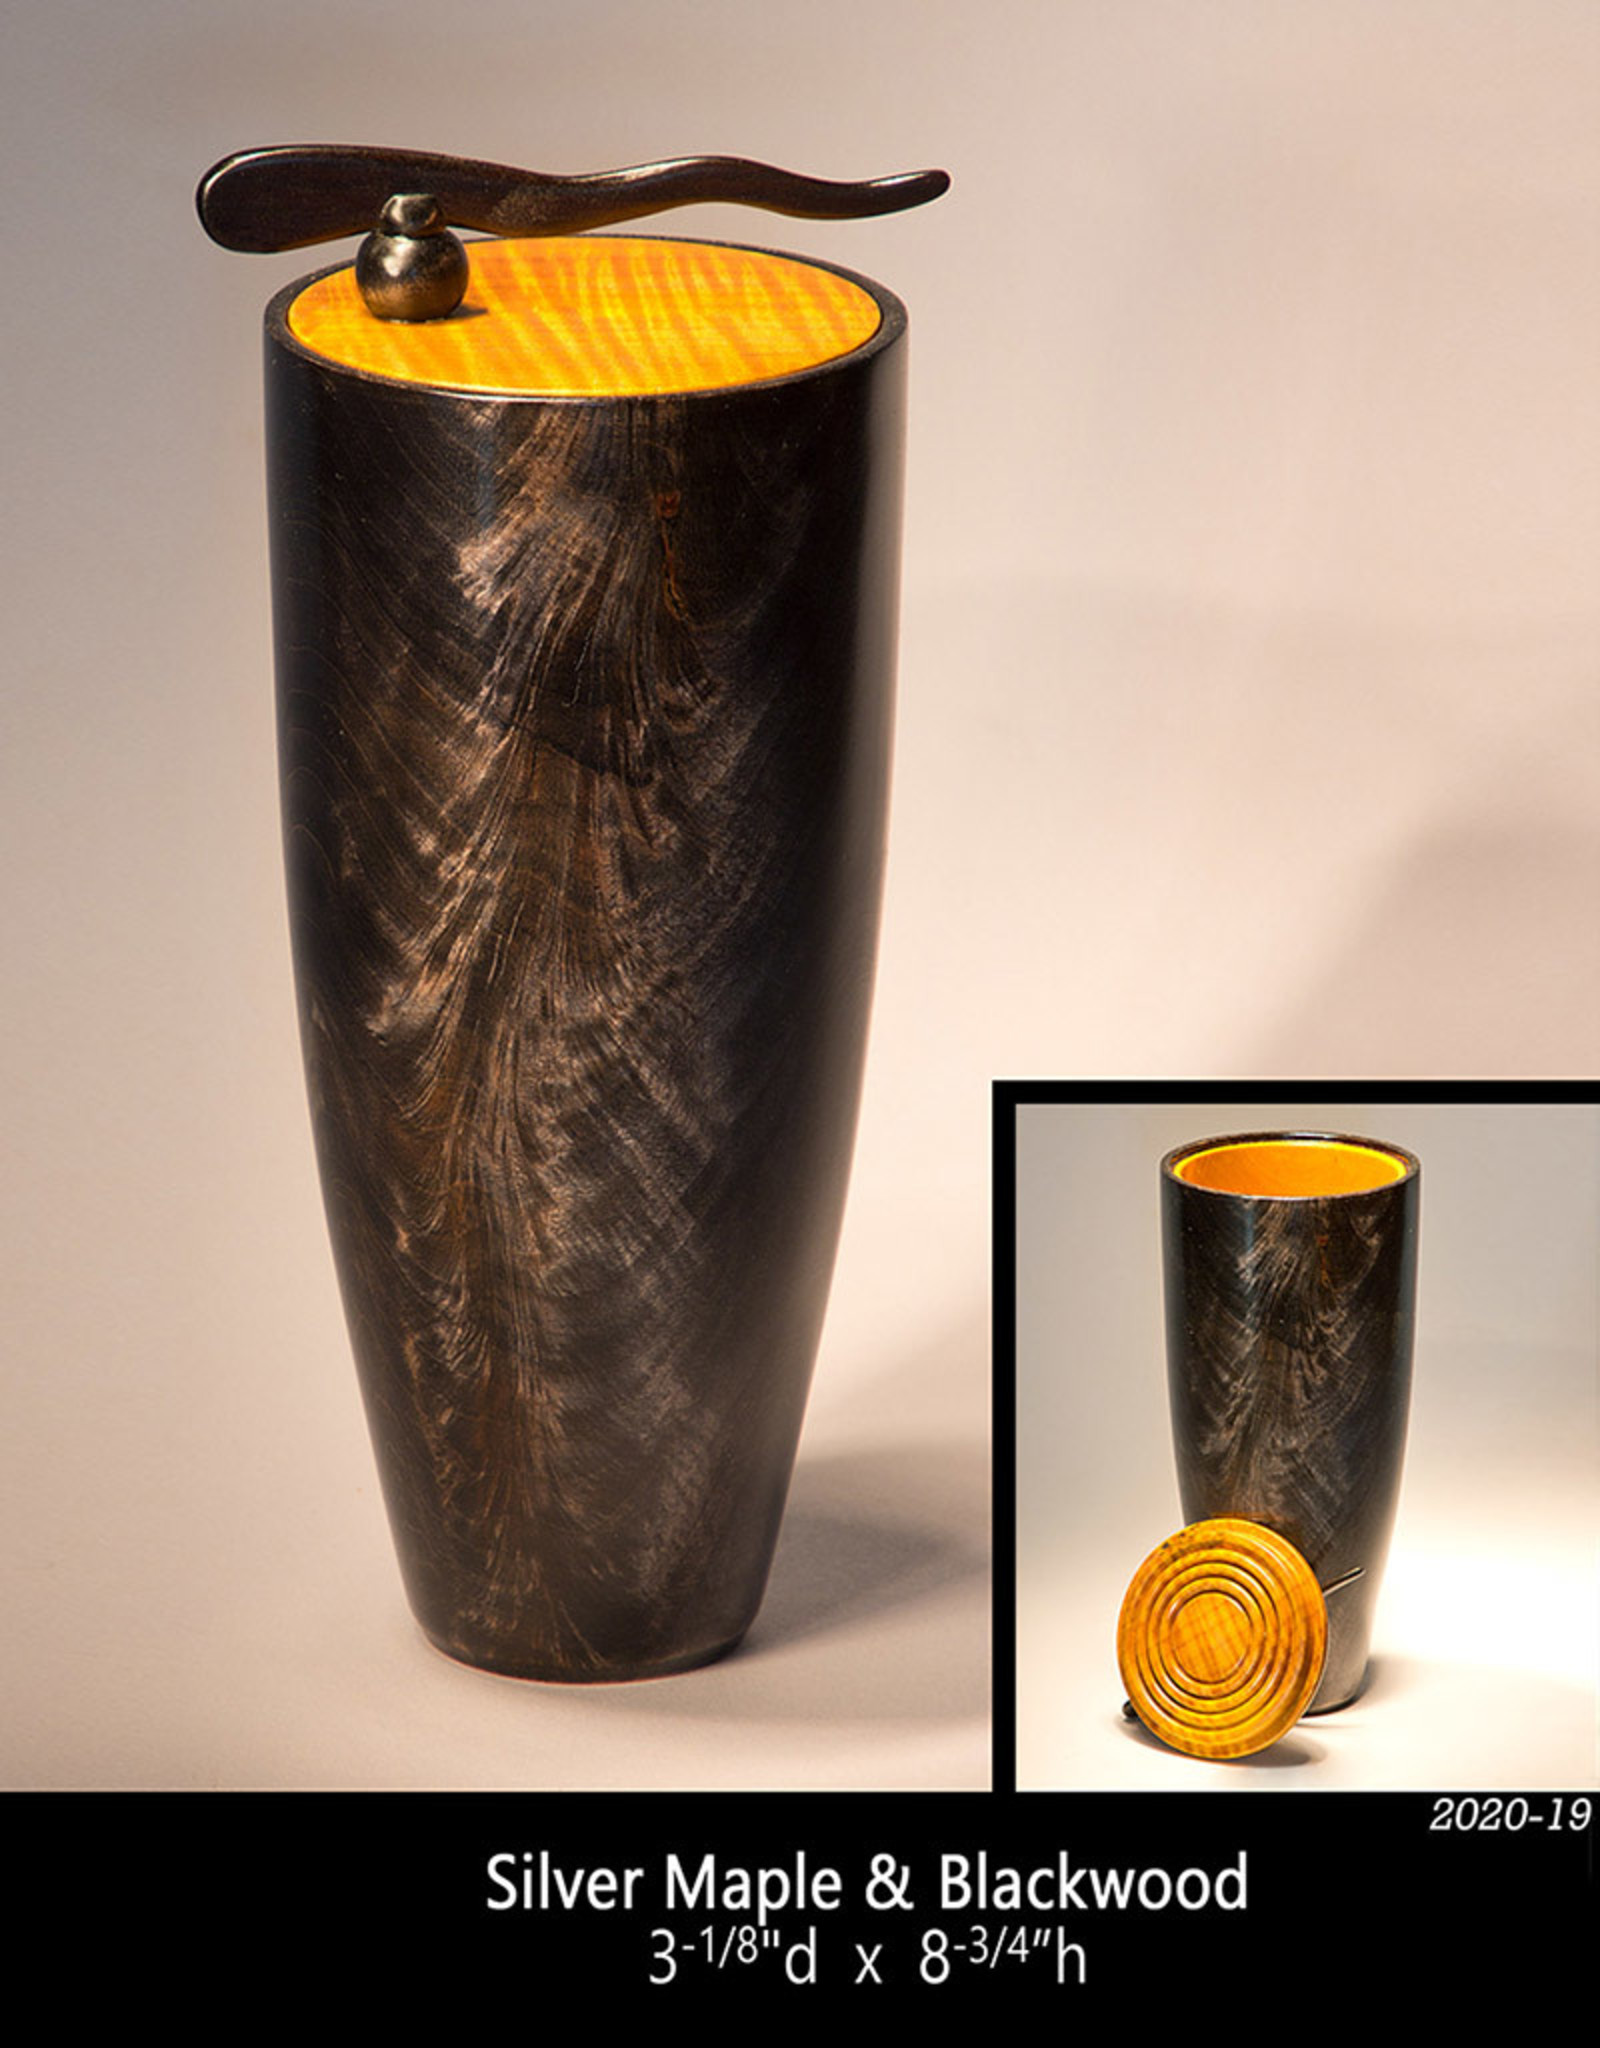 2020-19 Silver Maple & Blackwood Vase (lidded) Jeff Strickler